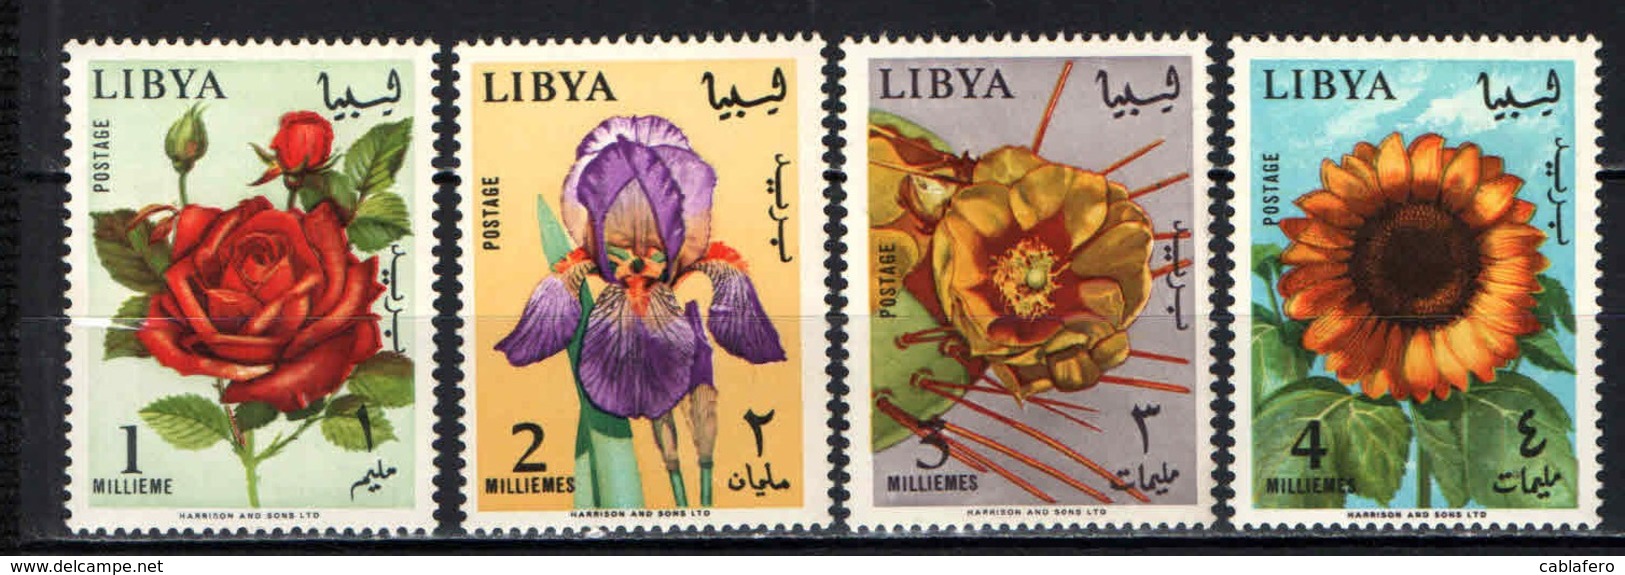 LIBIA - 1965 - Flowers - MNH - Libia